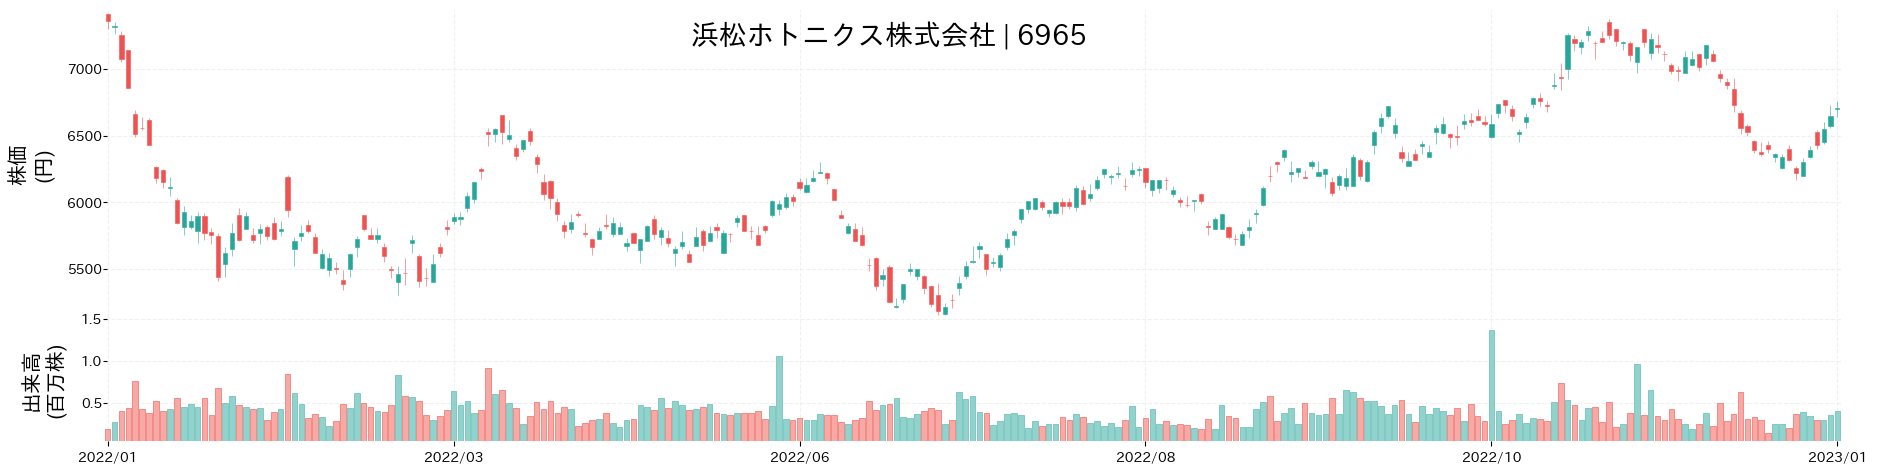 浜松ホトニクスの株価推移(2022)